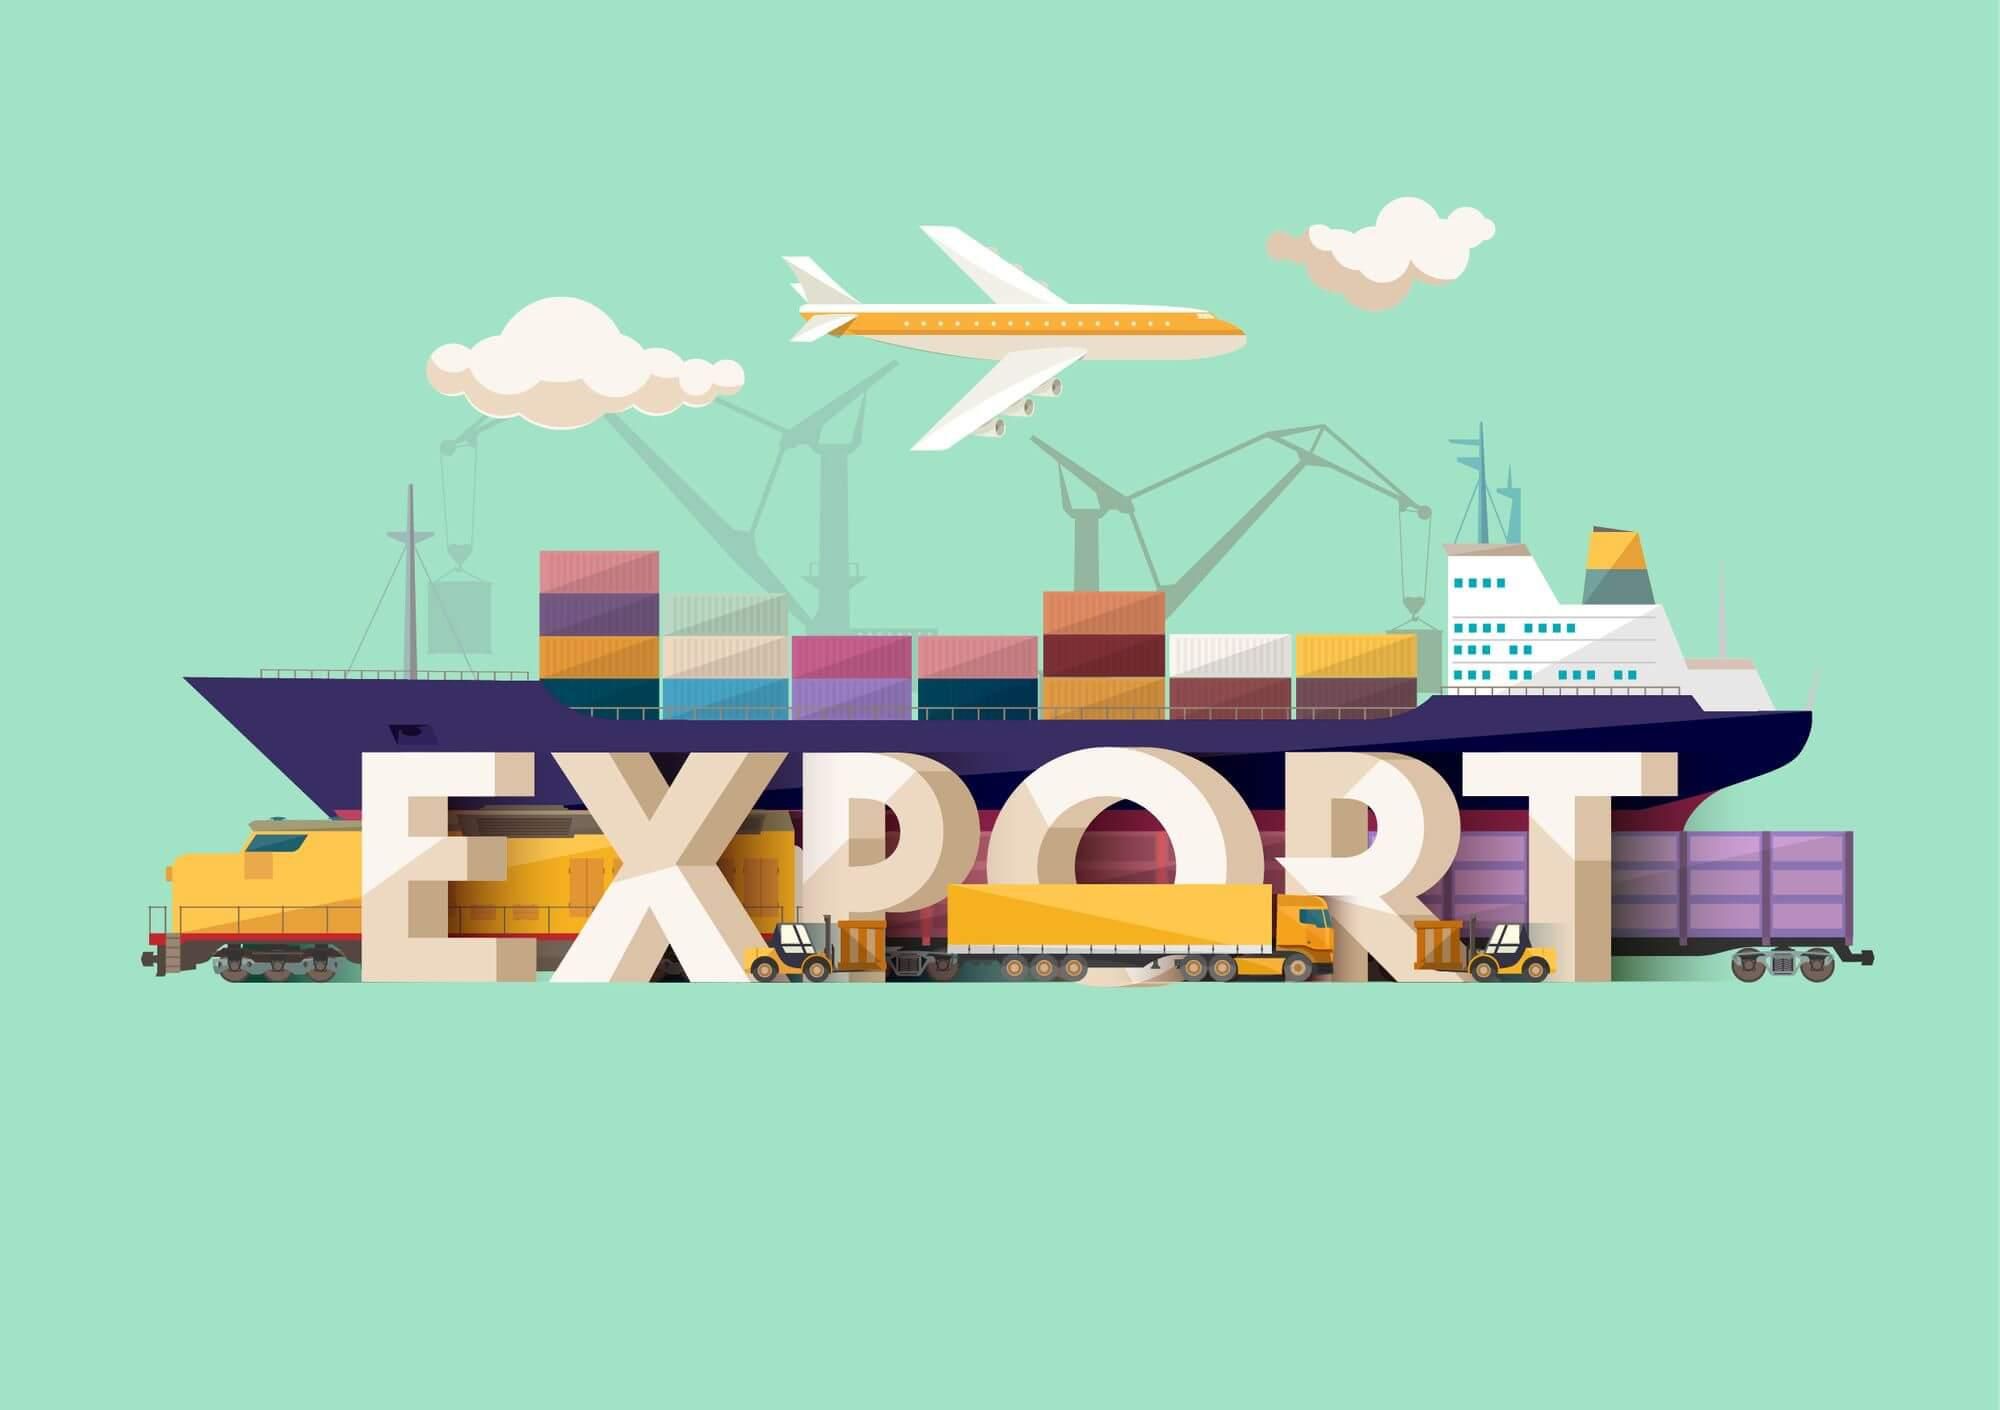 Export Business